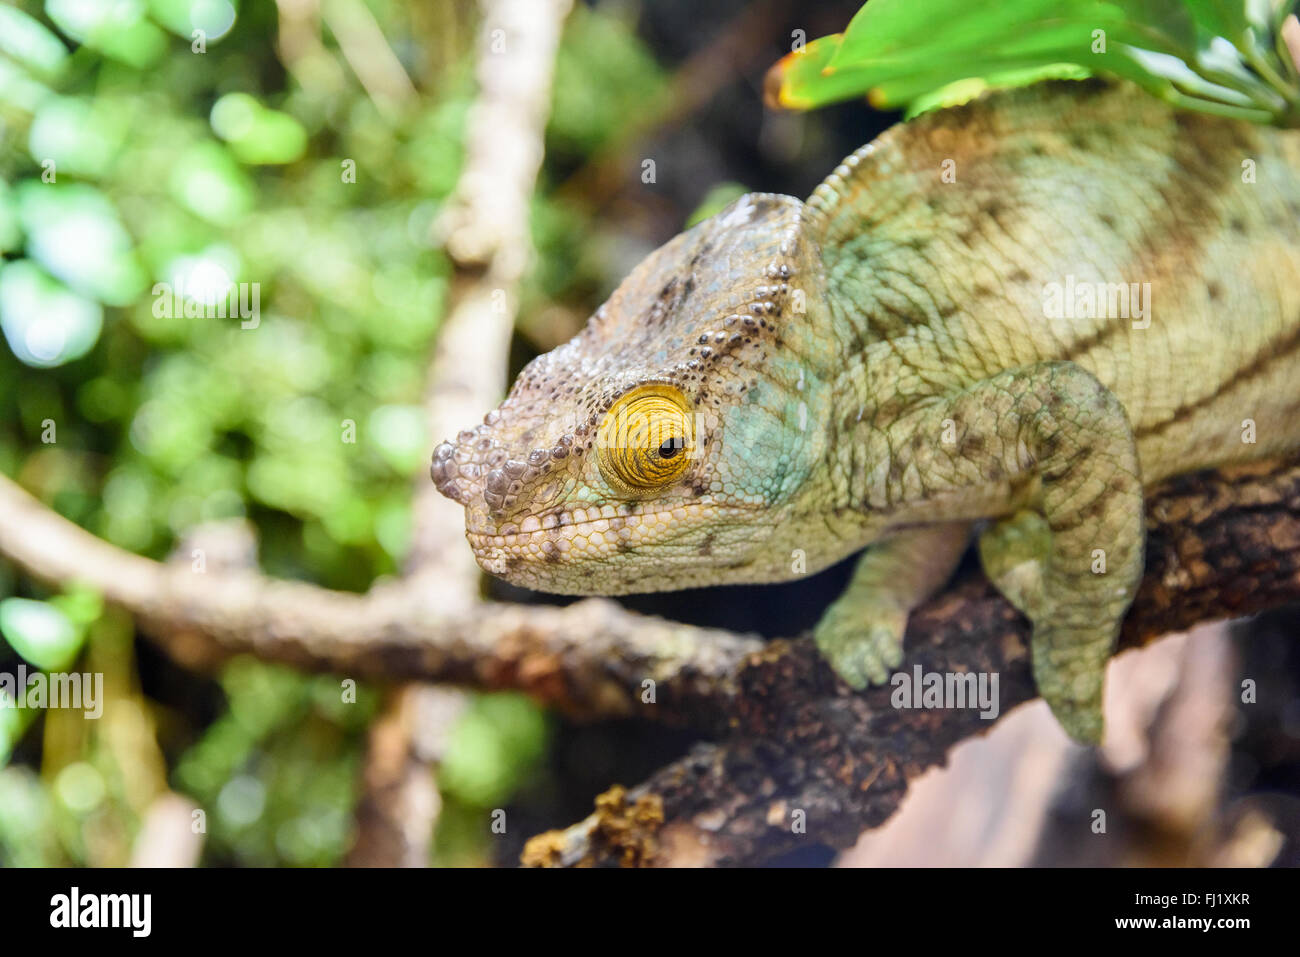 Green Chameleon Lizard On Branch Stock Photo